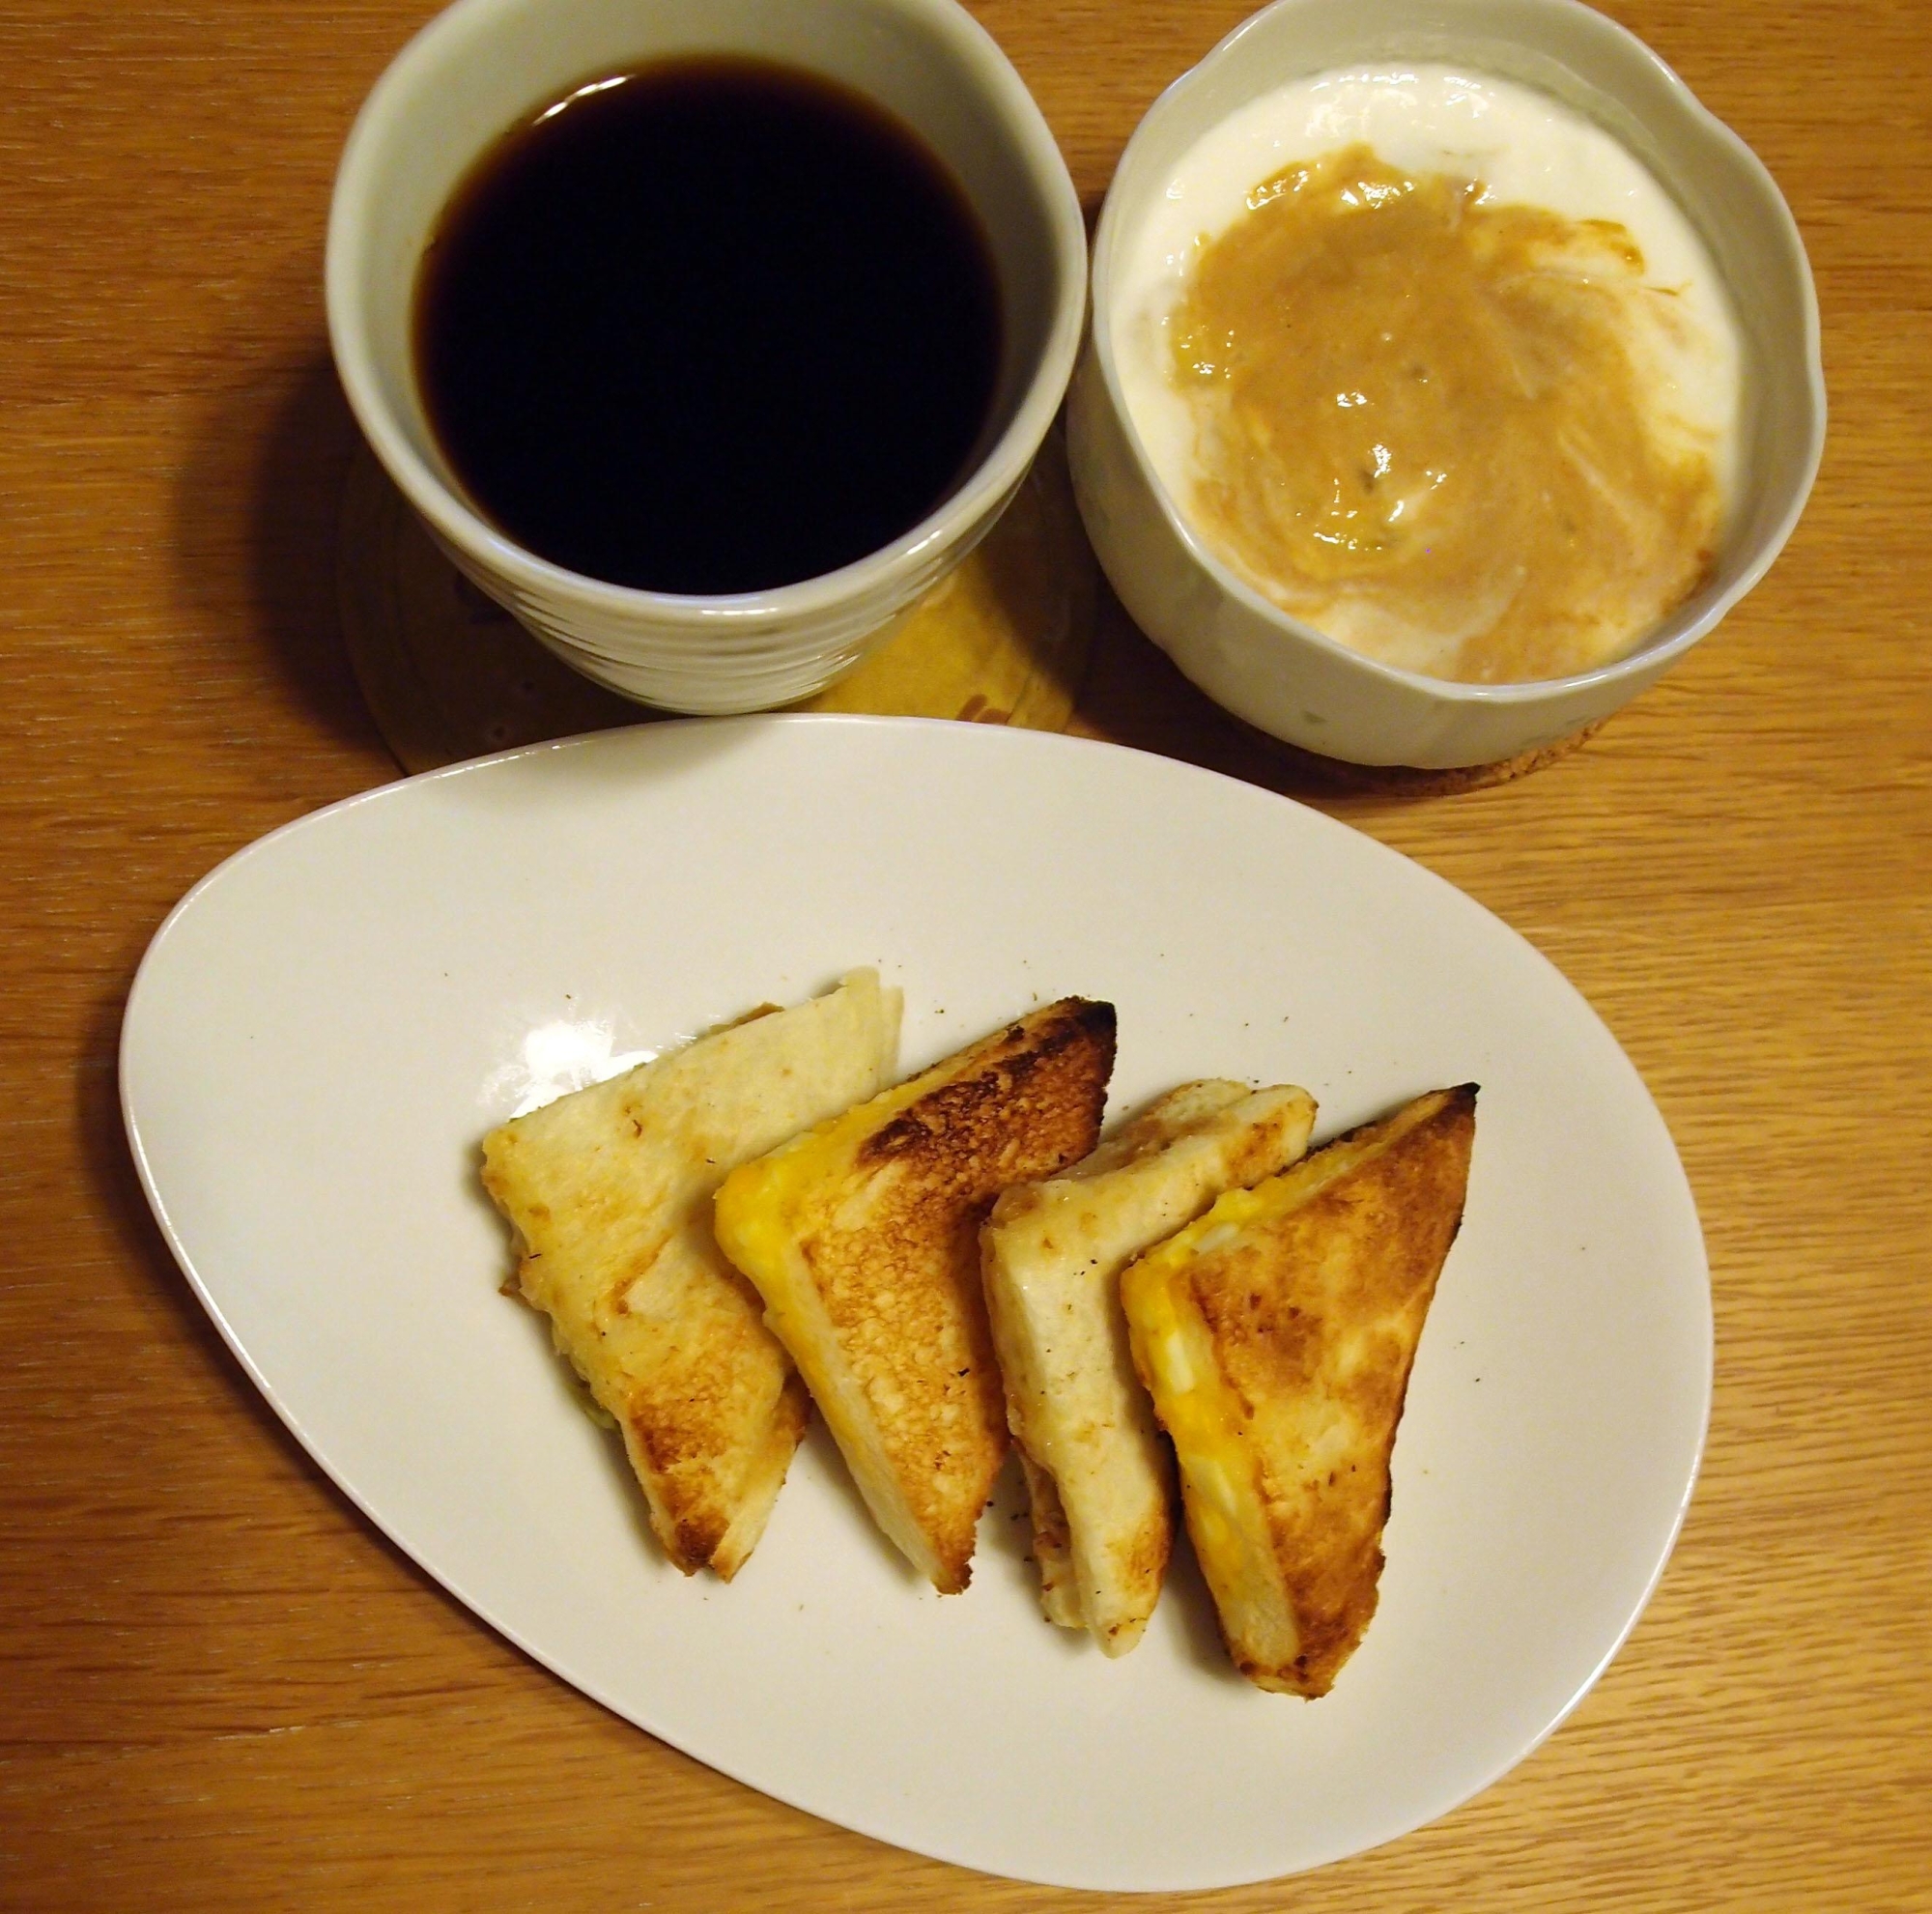 ホットサンド風玉子サンドとコーヒーヨーグルトの朝食